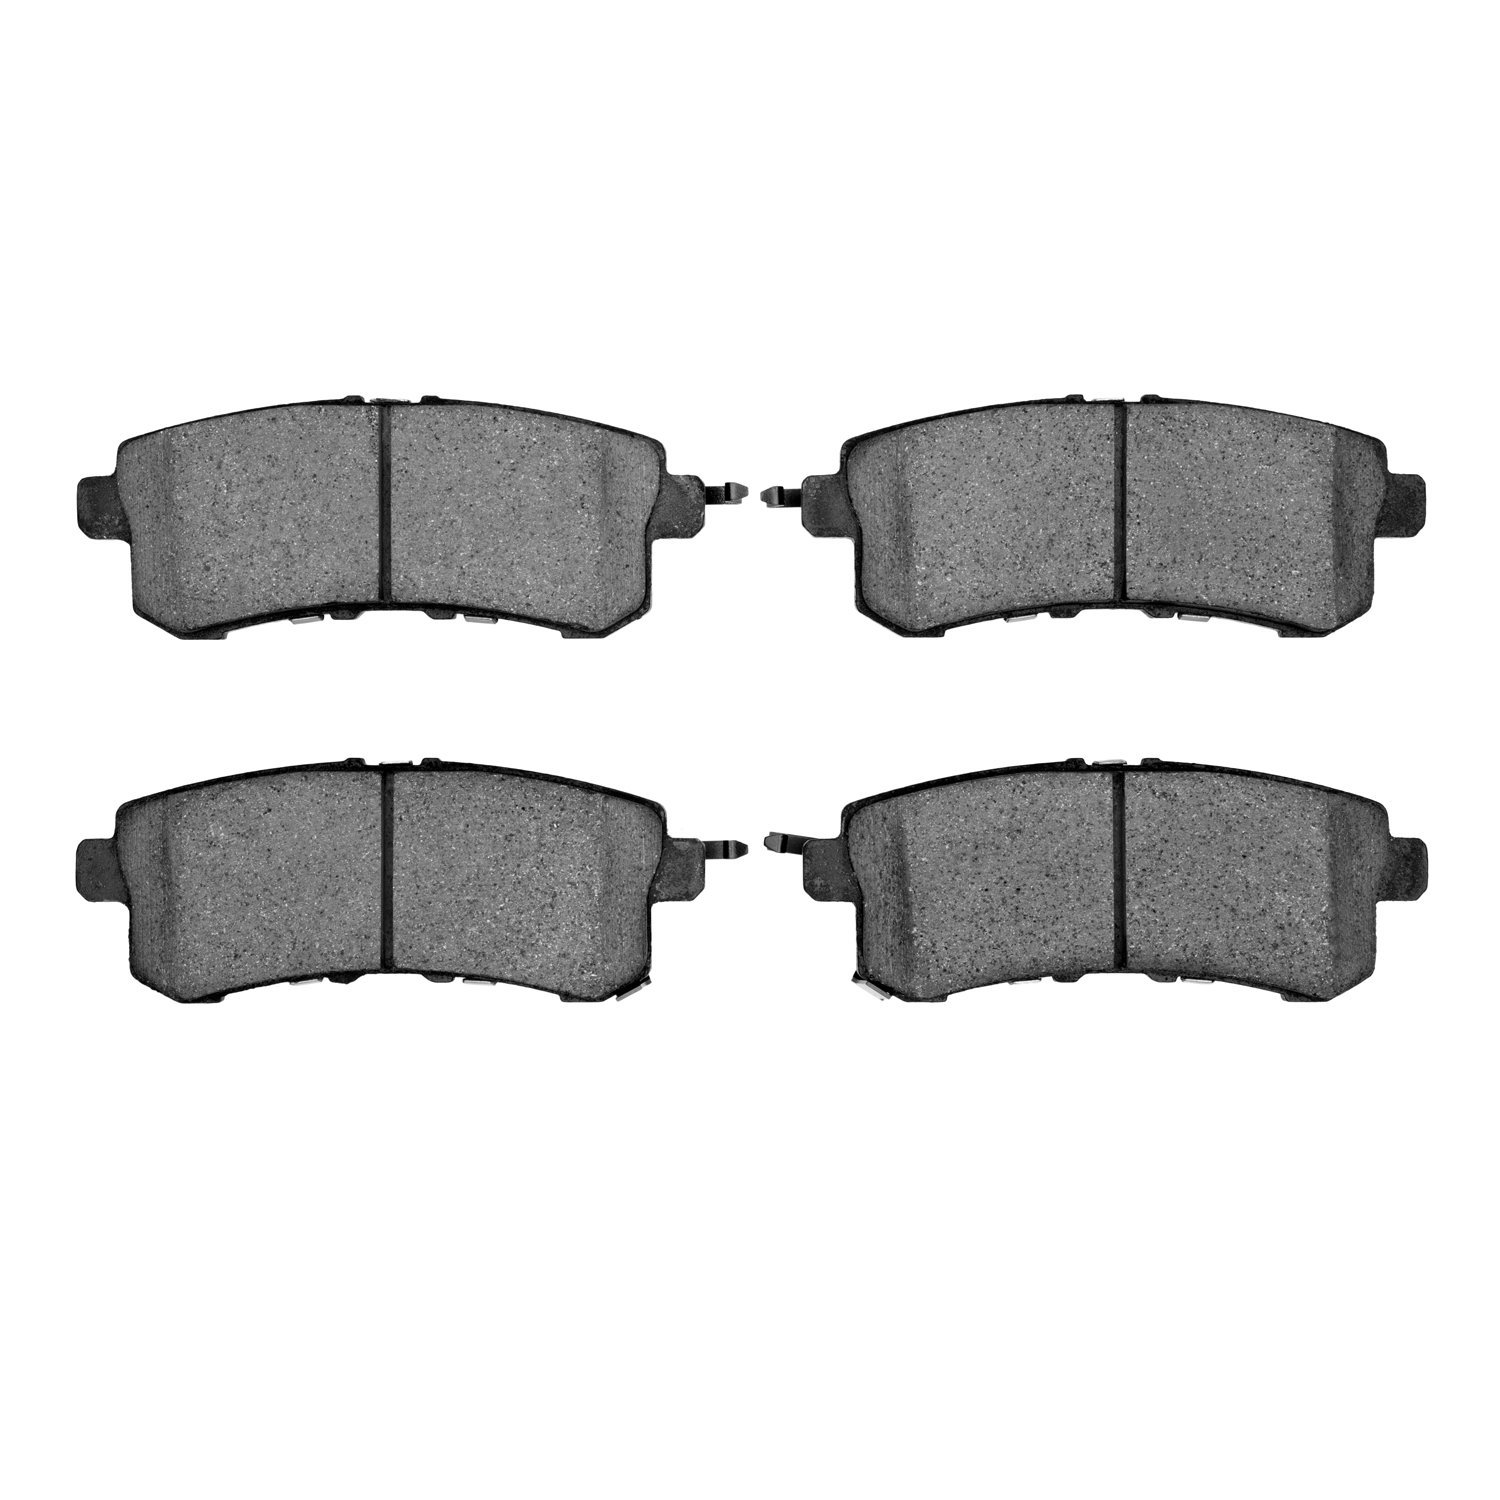 3000-Series Ceramic Brake Pads, Fits Select Infiniti/Nissan